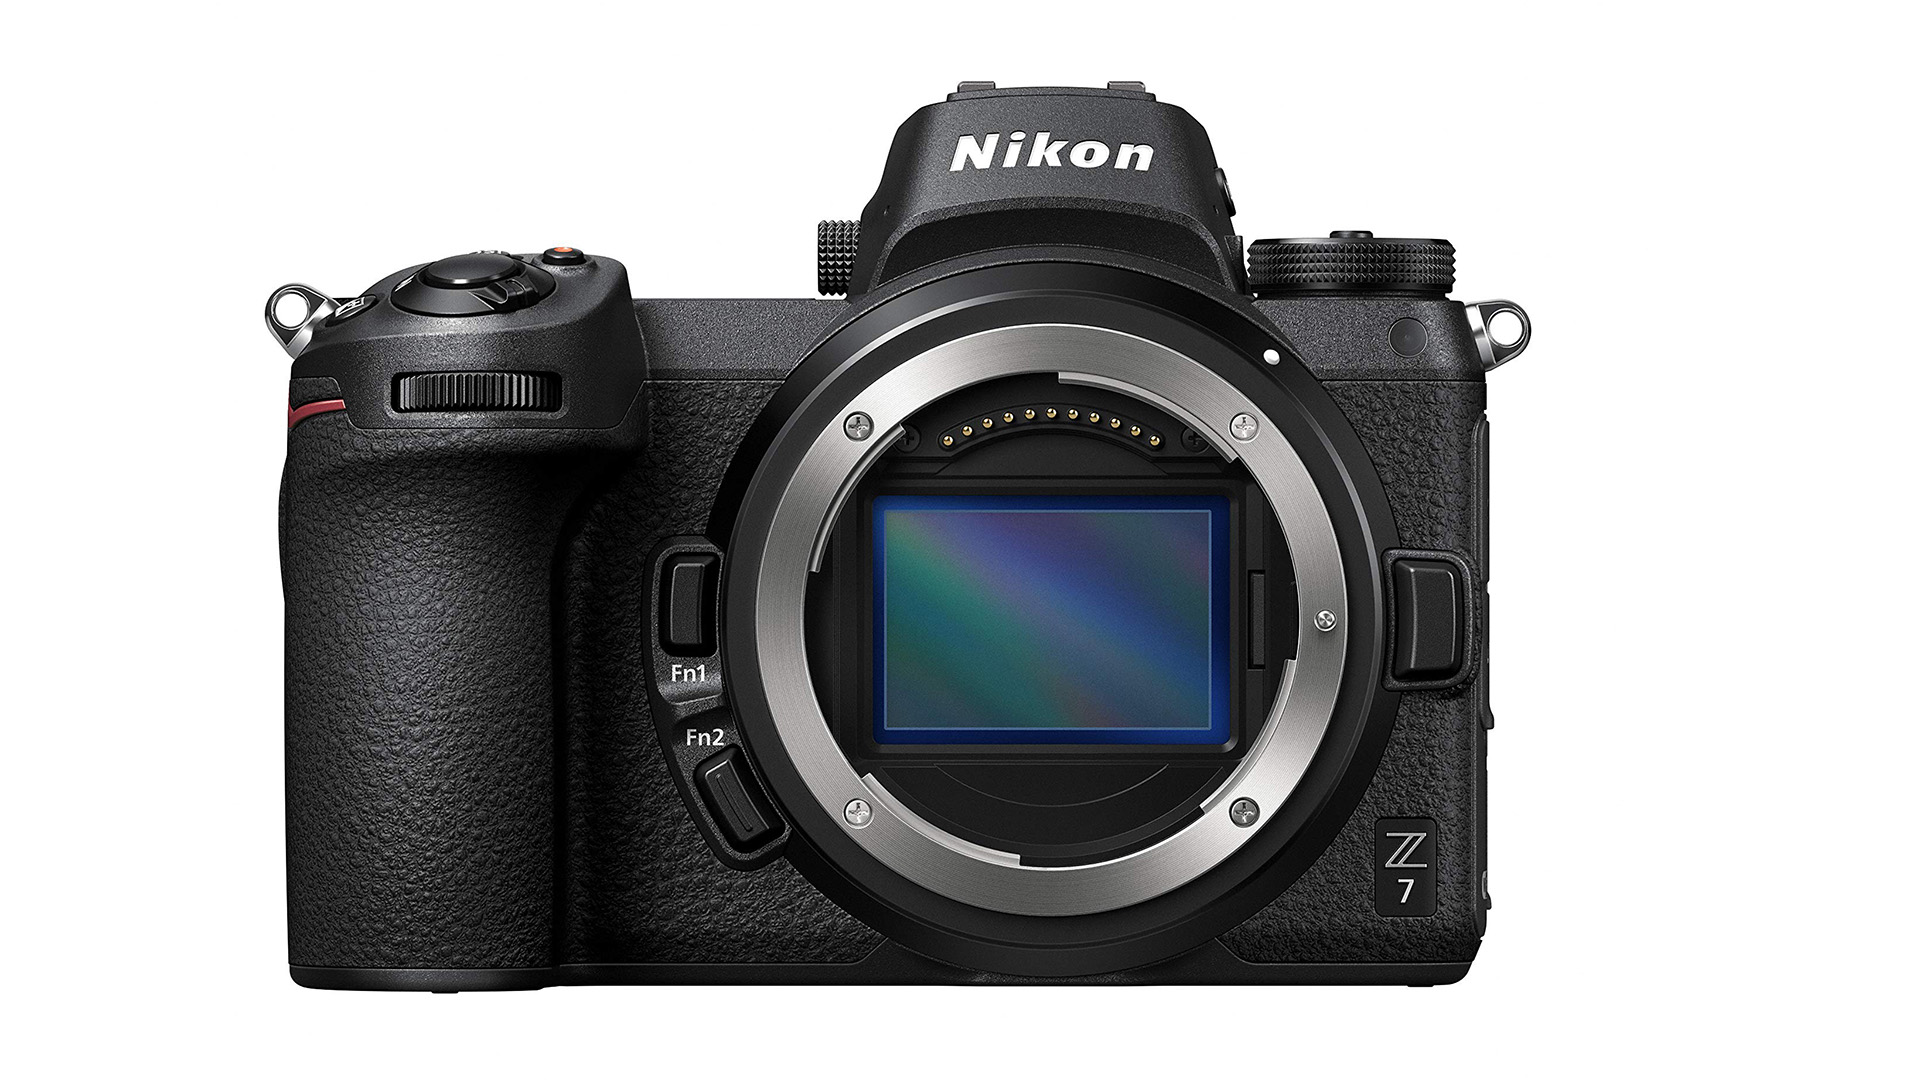 The Nikon Z7 camera body